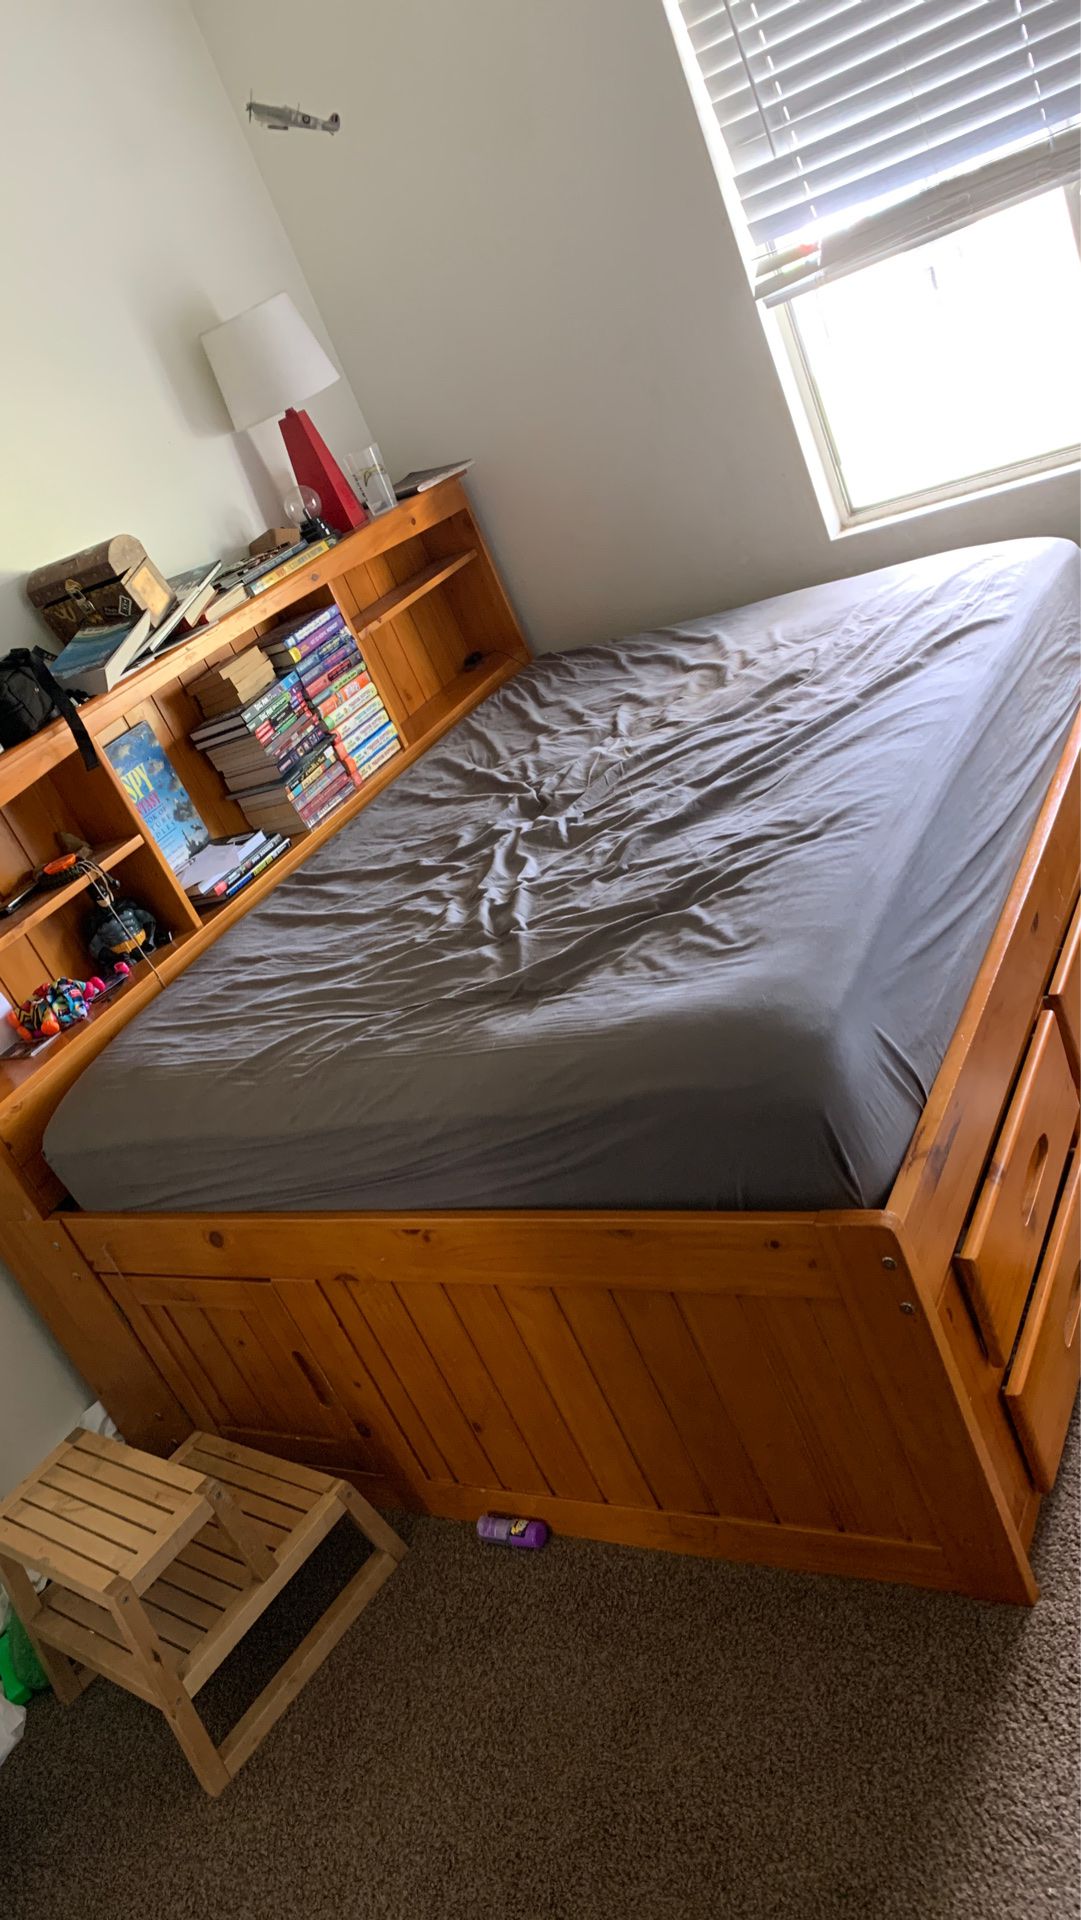 Full size bed frame